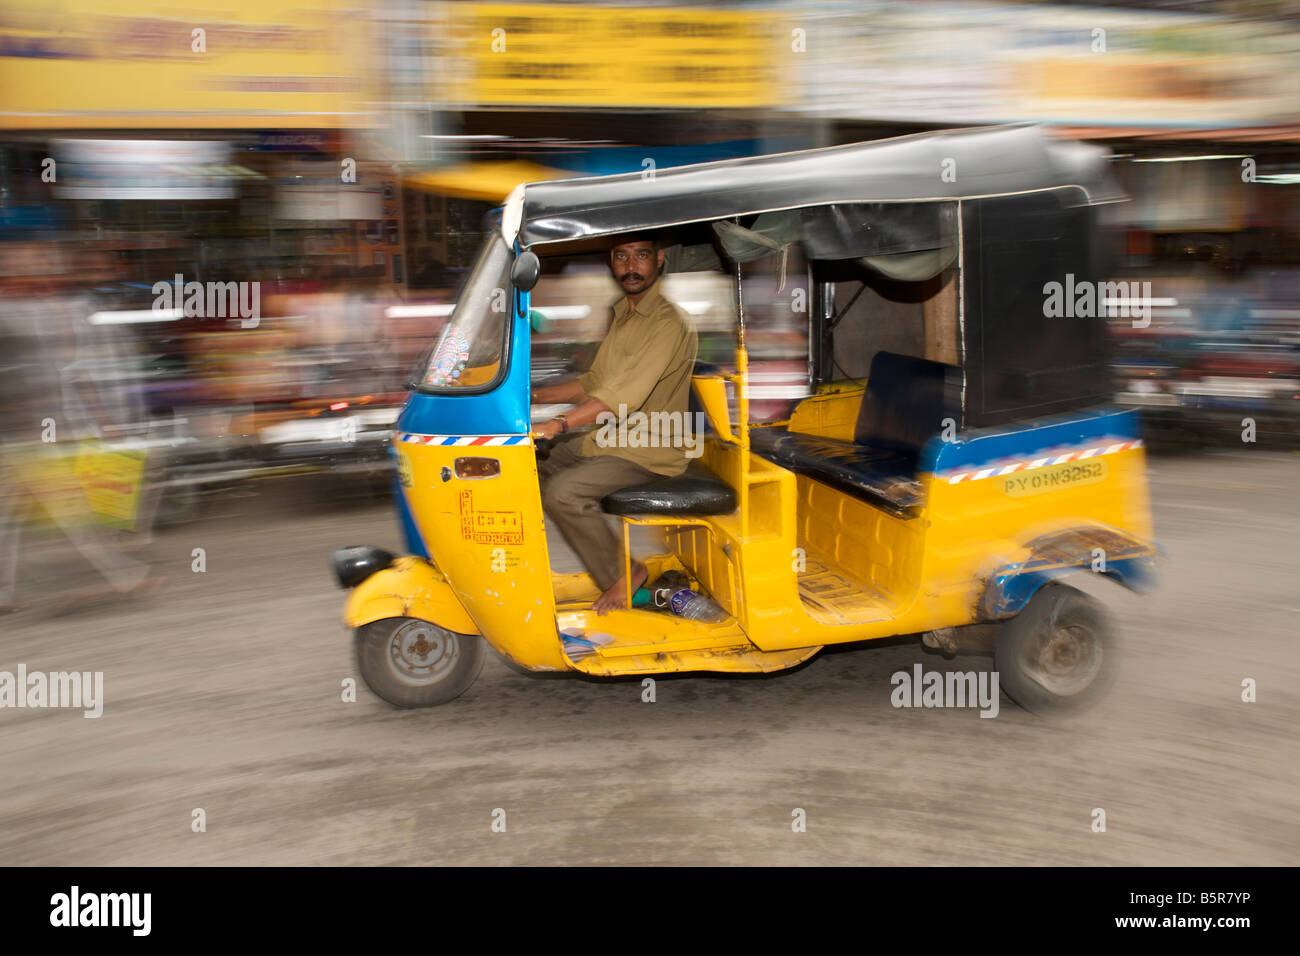 Auto rickshaw on a street in Pondicherry India. Stock Photo